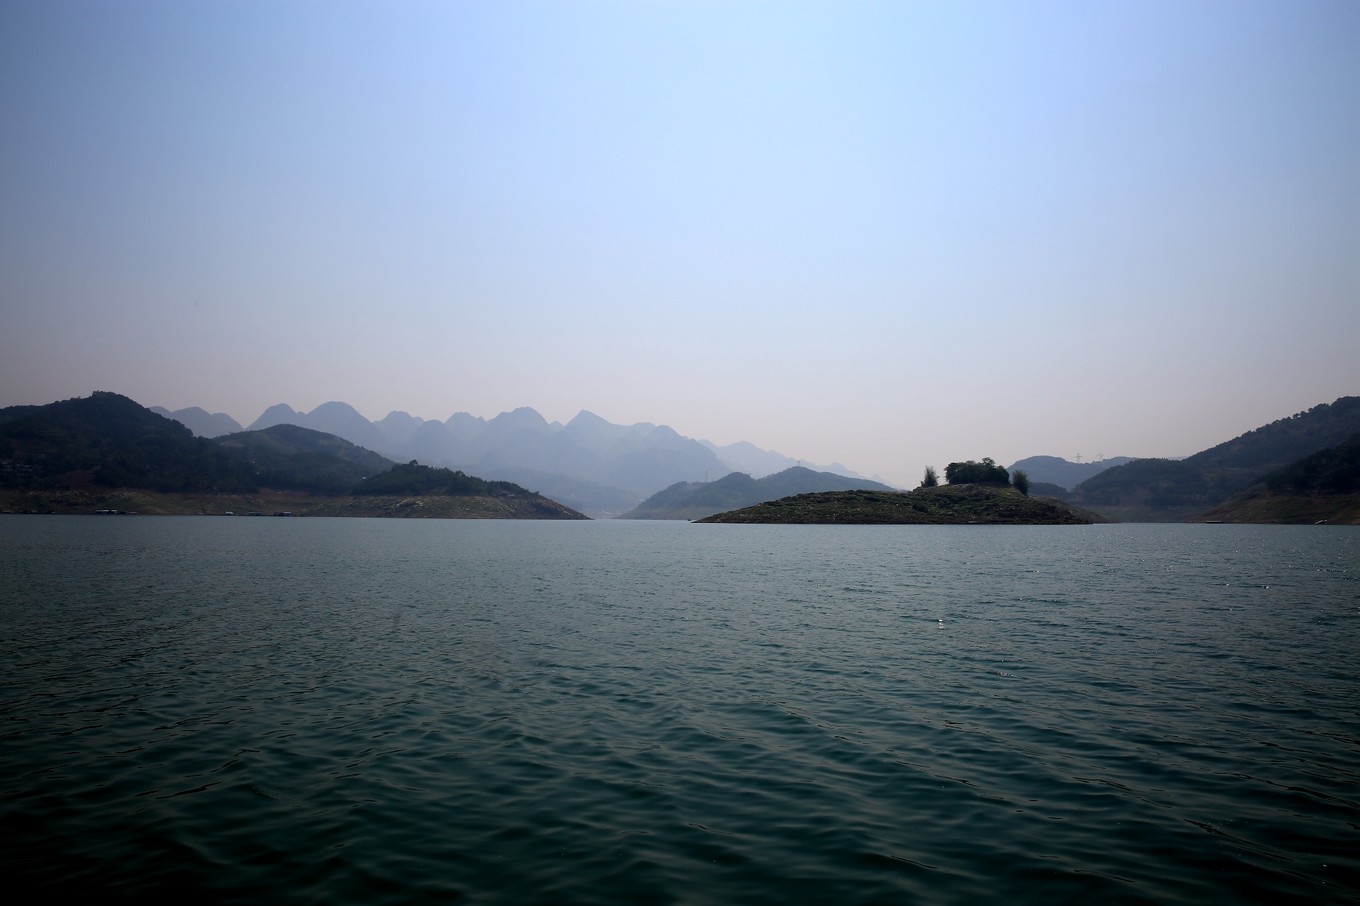 万峰湖鱼肥水美，钓者云集，被誉为“野钓者的乐园”